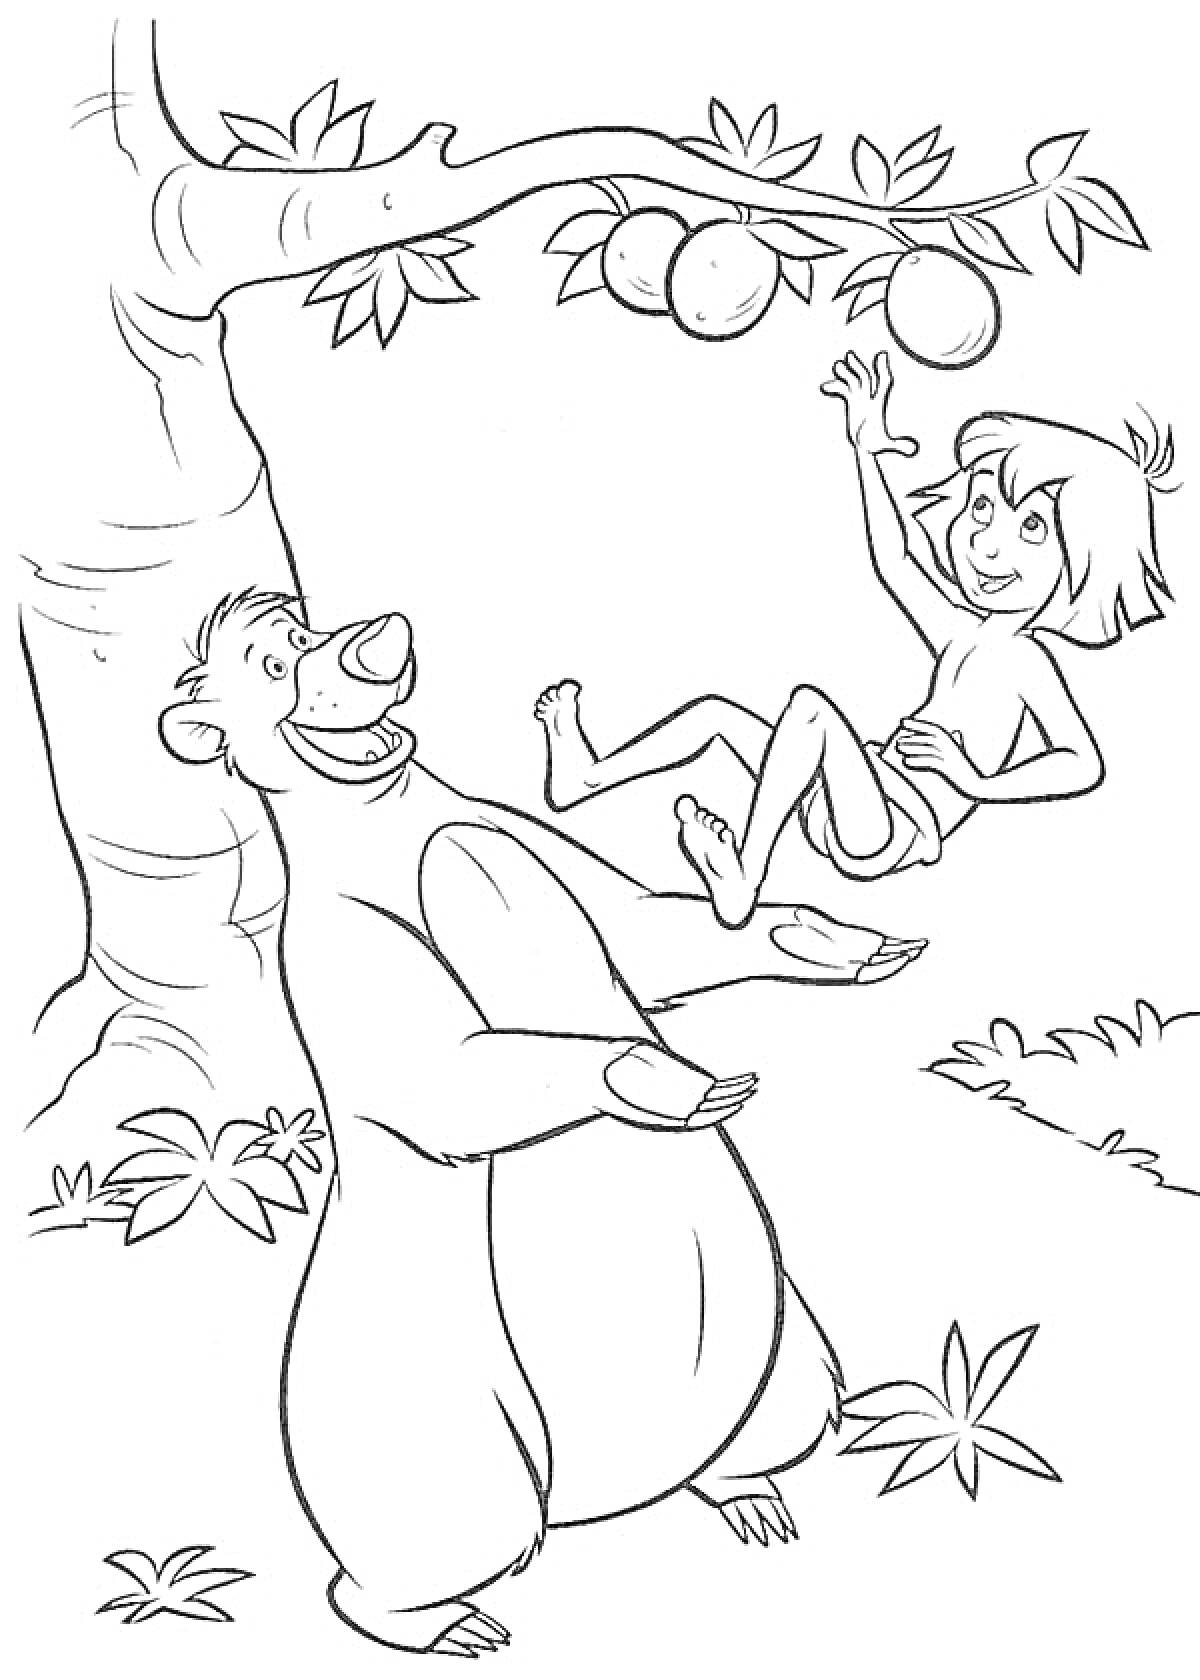 Мальчик на руках медведя под деревом с фруктами в джунглях